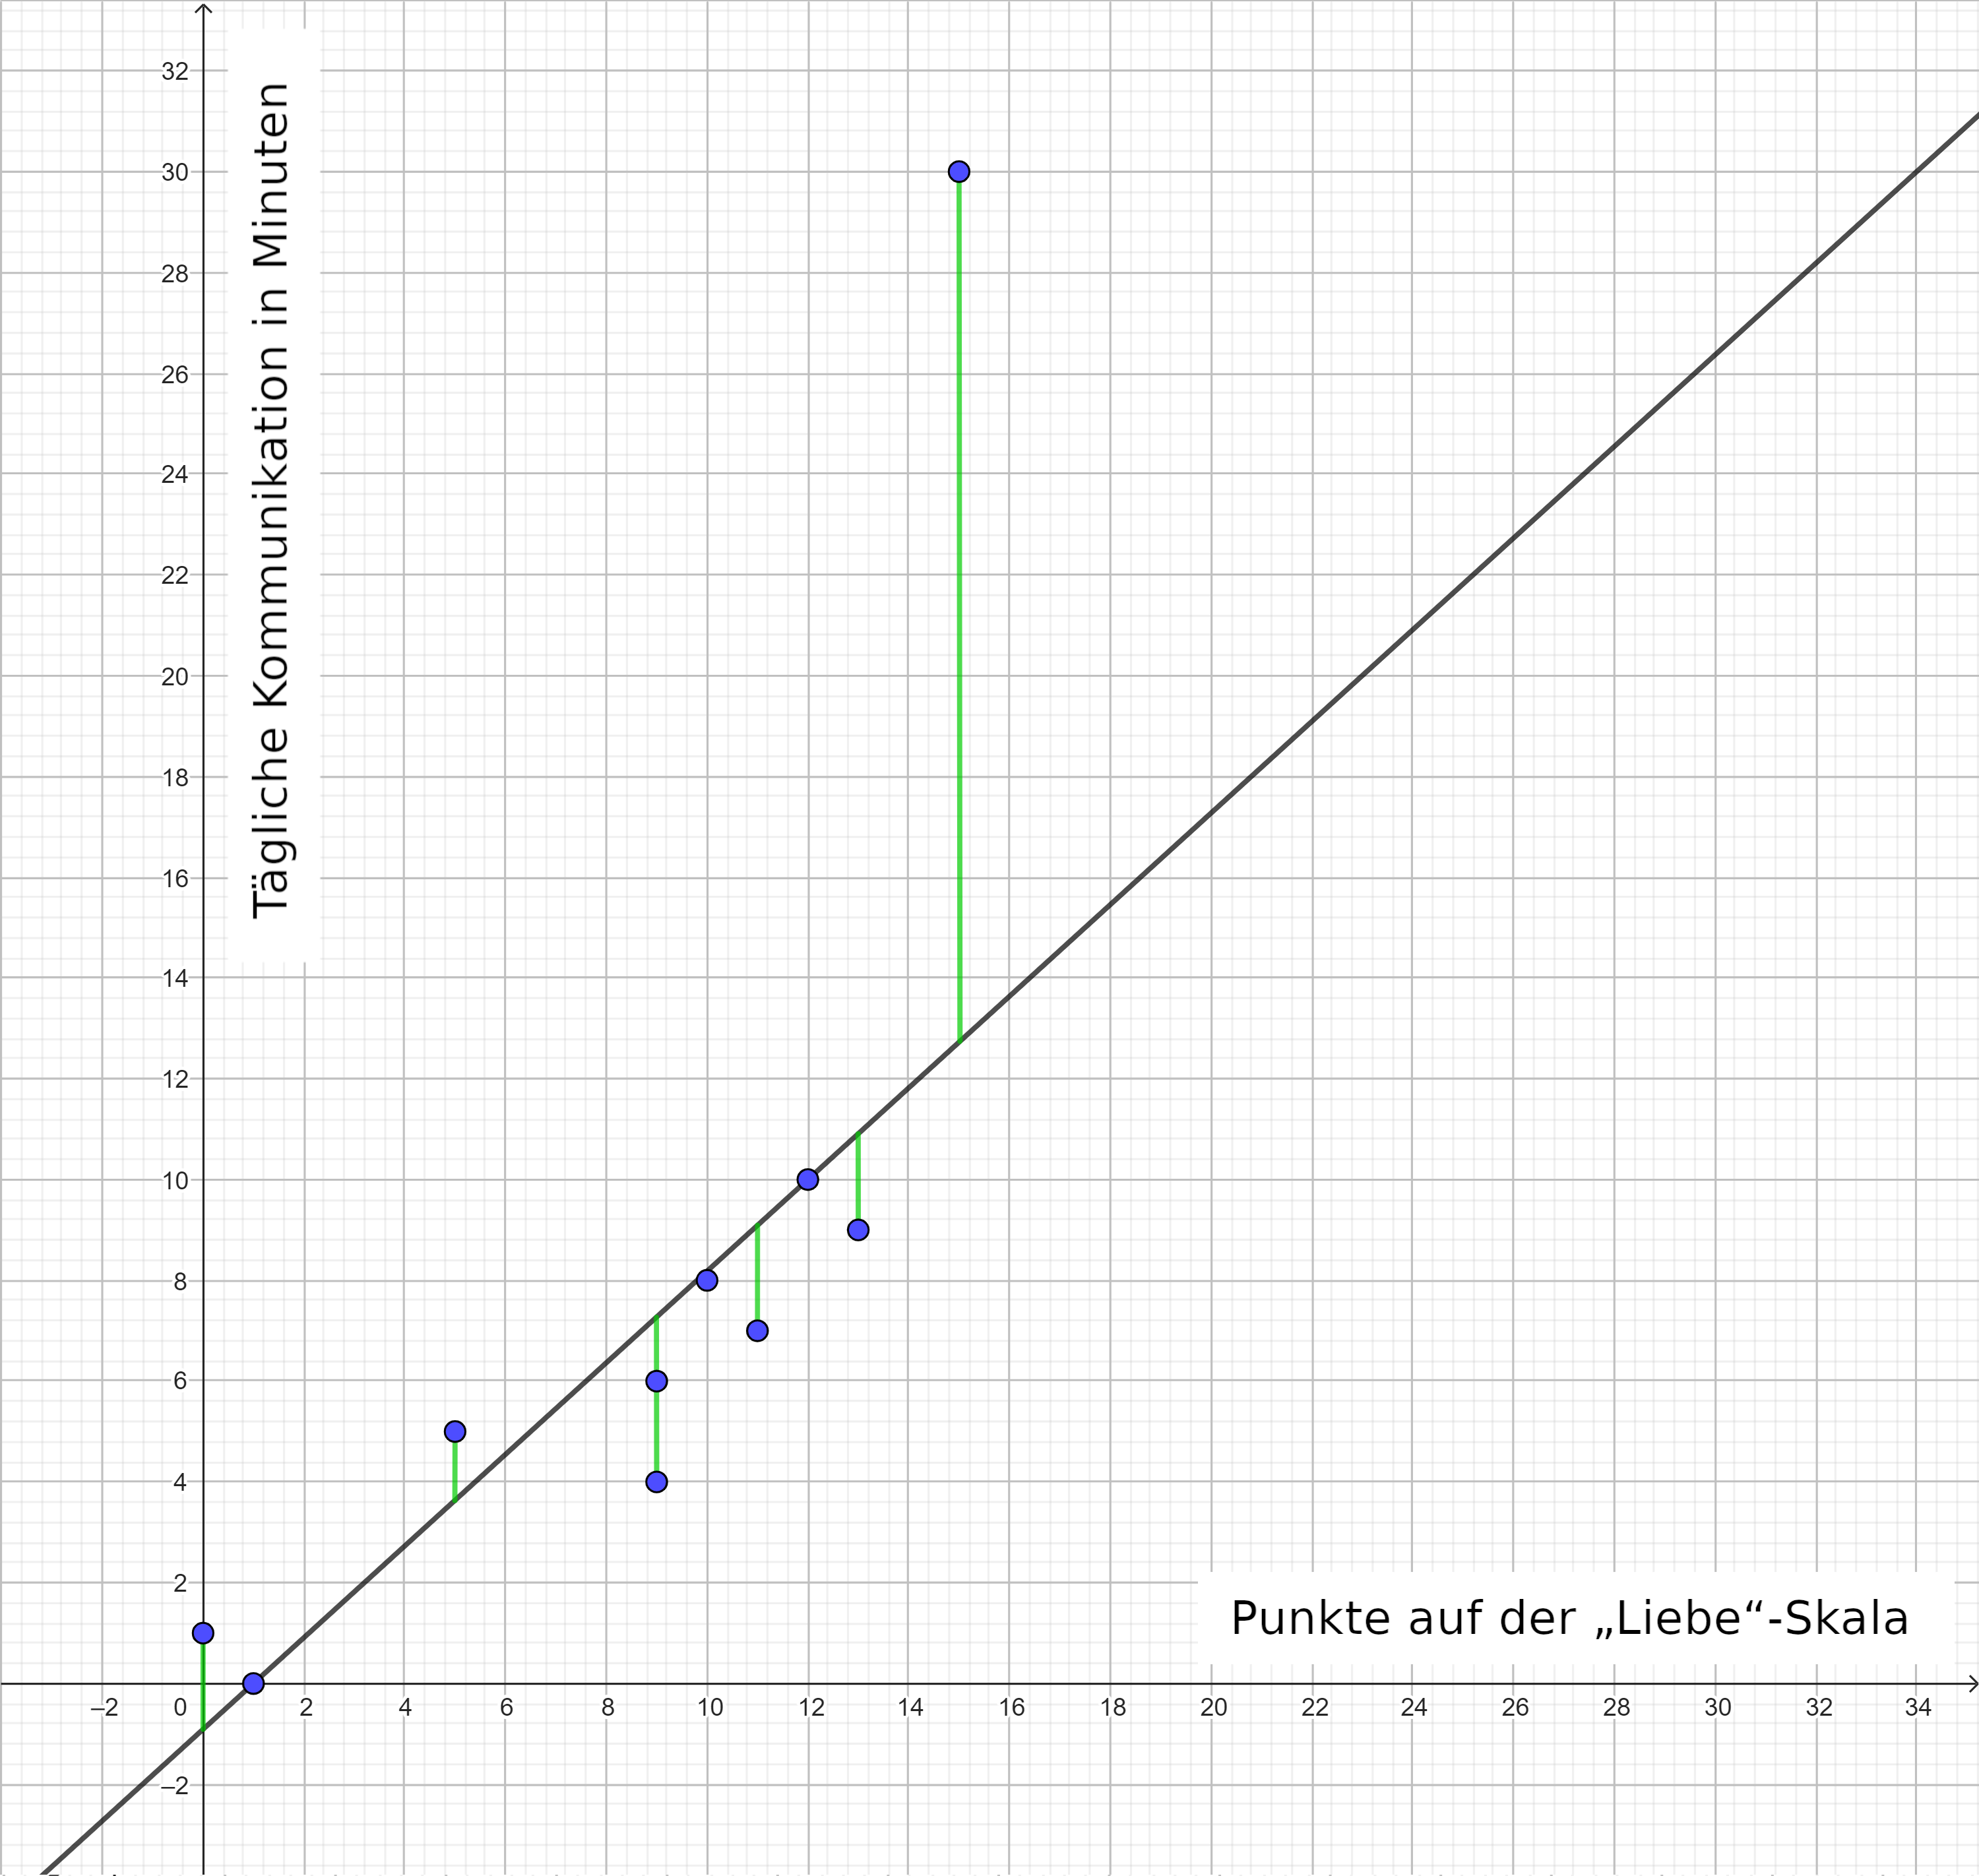 In einem x-y-Diagramm befinden sich an unterschiedlichen Stellen 10 blaue Punkte. Die x-Wert-Achse ist bezeichnet mit dem Text „Punkte auf der „Liebe“-Skala“. Die y-Wert-Achse ist bezeichnet mit dem Text „Tägliche Kommunikation in Minuten“. Eine graue Gerade verläuft durch die gesamte Diagrammfläche von links-unten nach rechts-oben. Sechs blaue Punkte sind jeweils mit einer kurzen grünen, zur y-Wert-Achse parallelen, Strecke mit der grauen Gerade verbunden. Für einen weiteren blauen Punkt ist diese grüne Strecke aber deutlich länger. Dagegen liegen die verbleibenden 3 blauen Punkte fast auf der grauen Gerade.